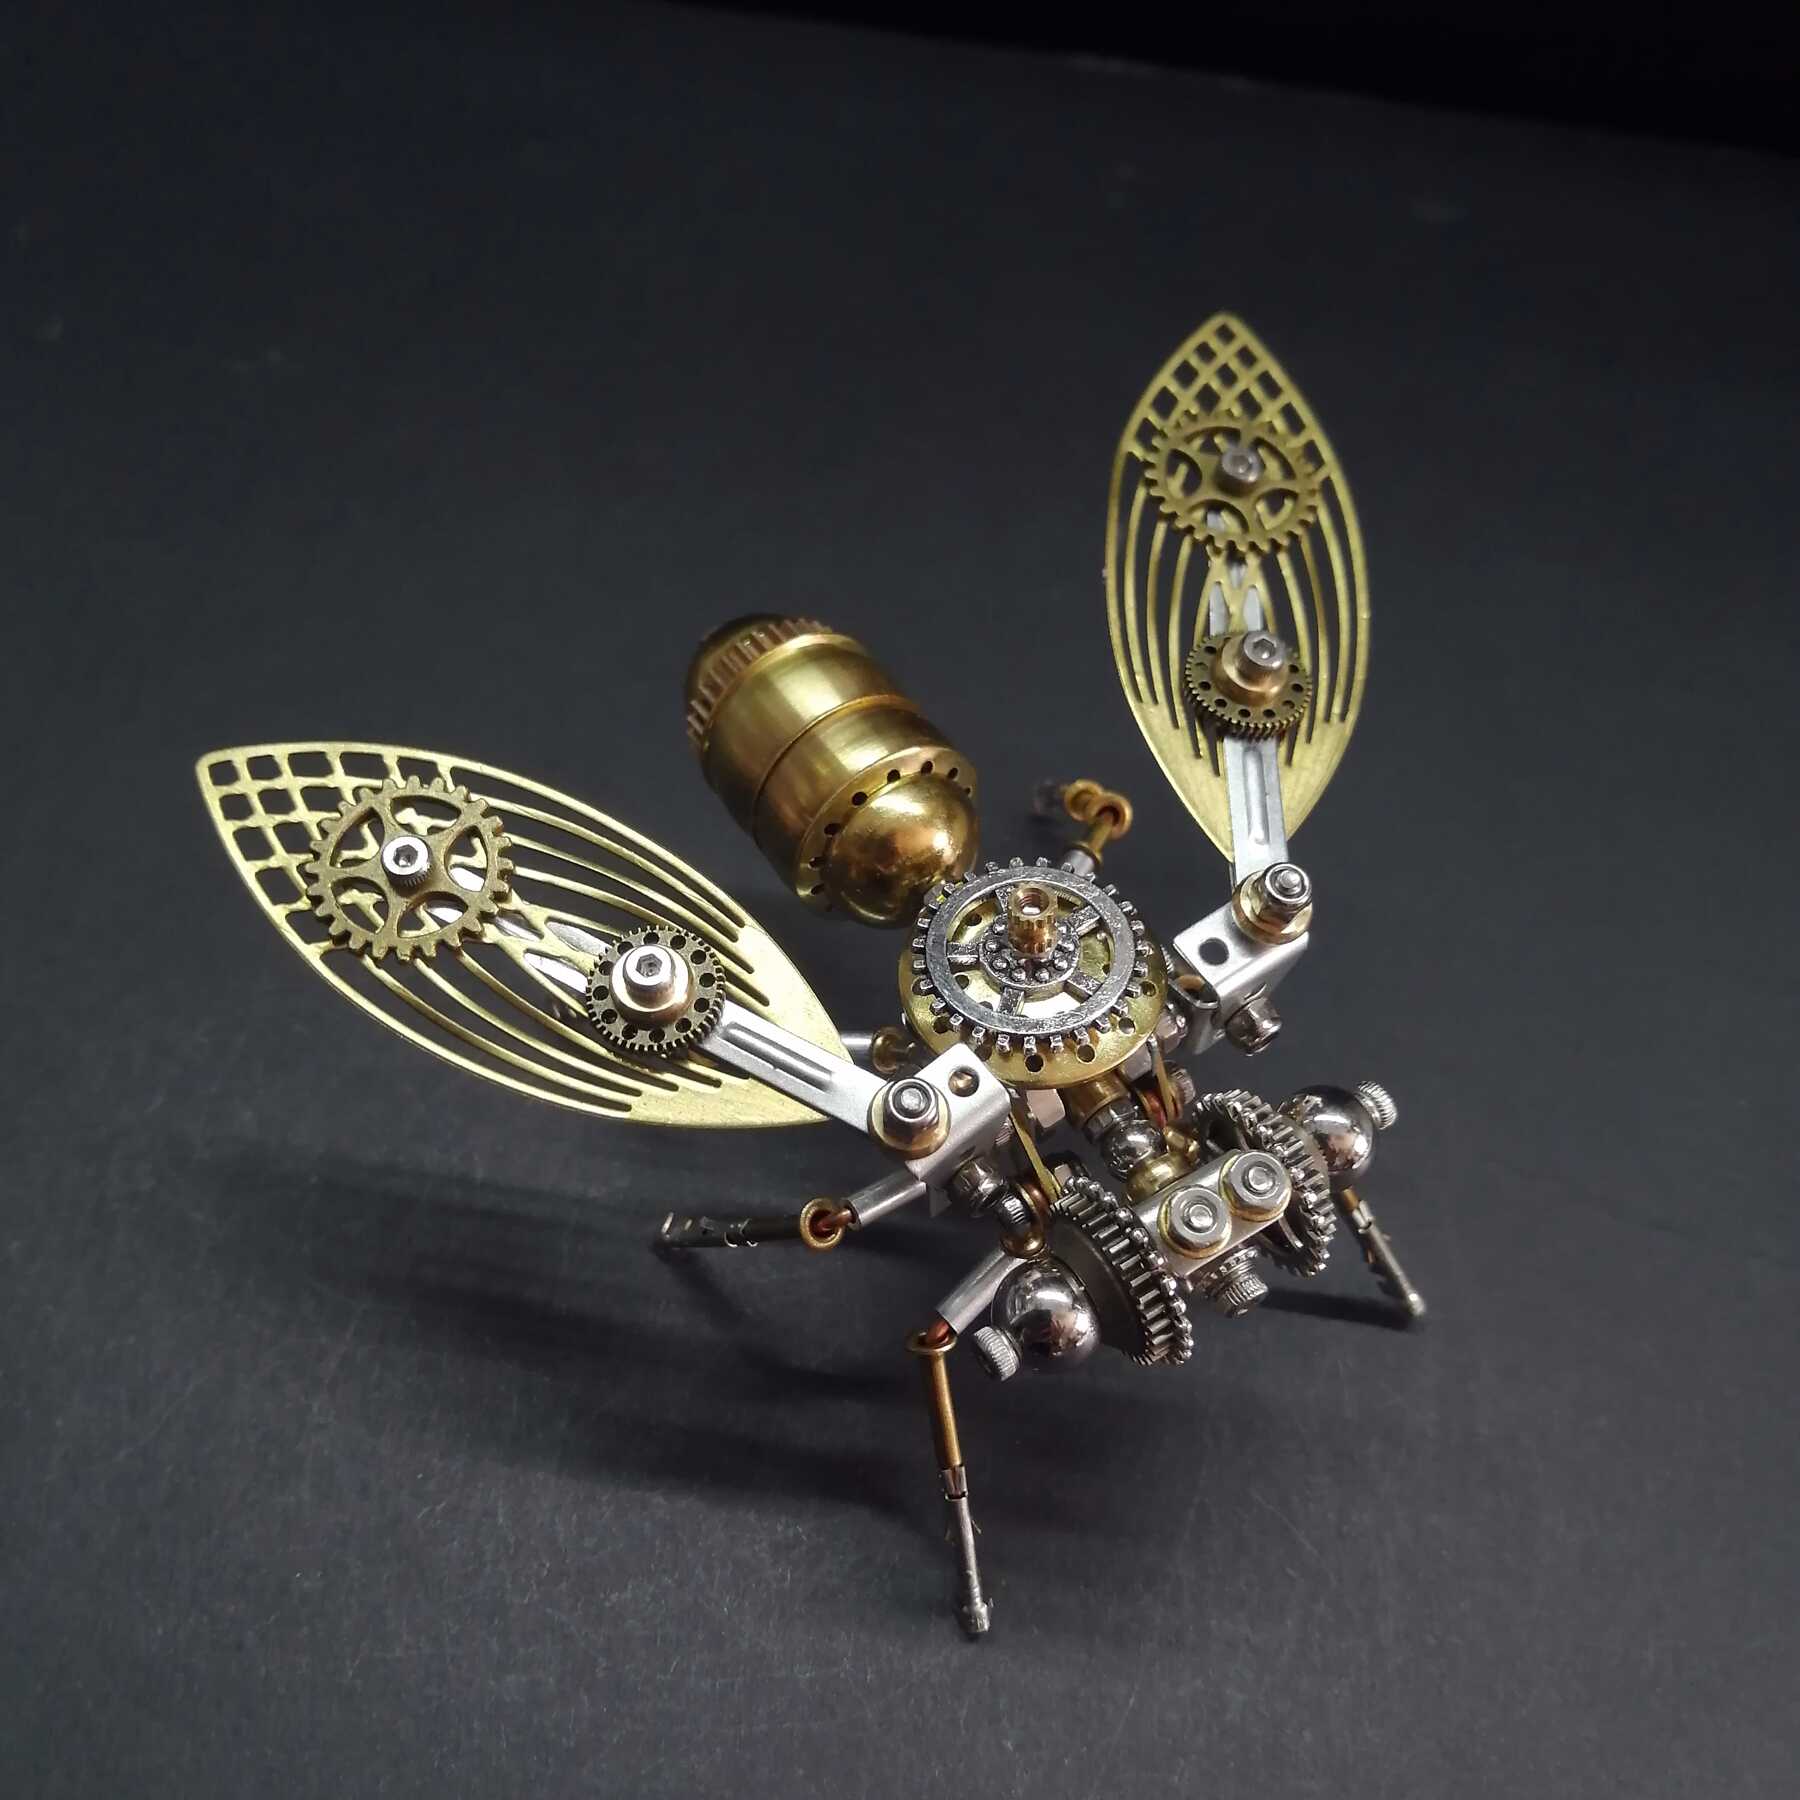 蒸汽朋克机械昆虫苍蝇金属拼装模型创意手工diy制作男孩礼物